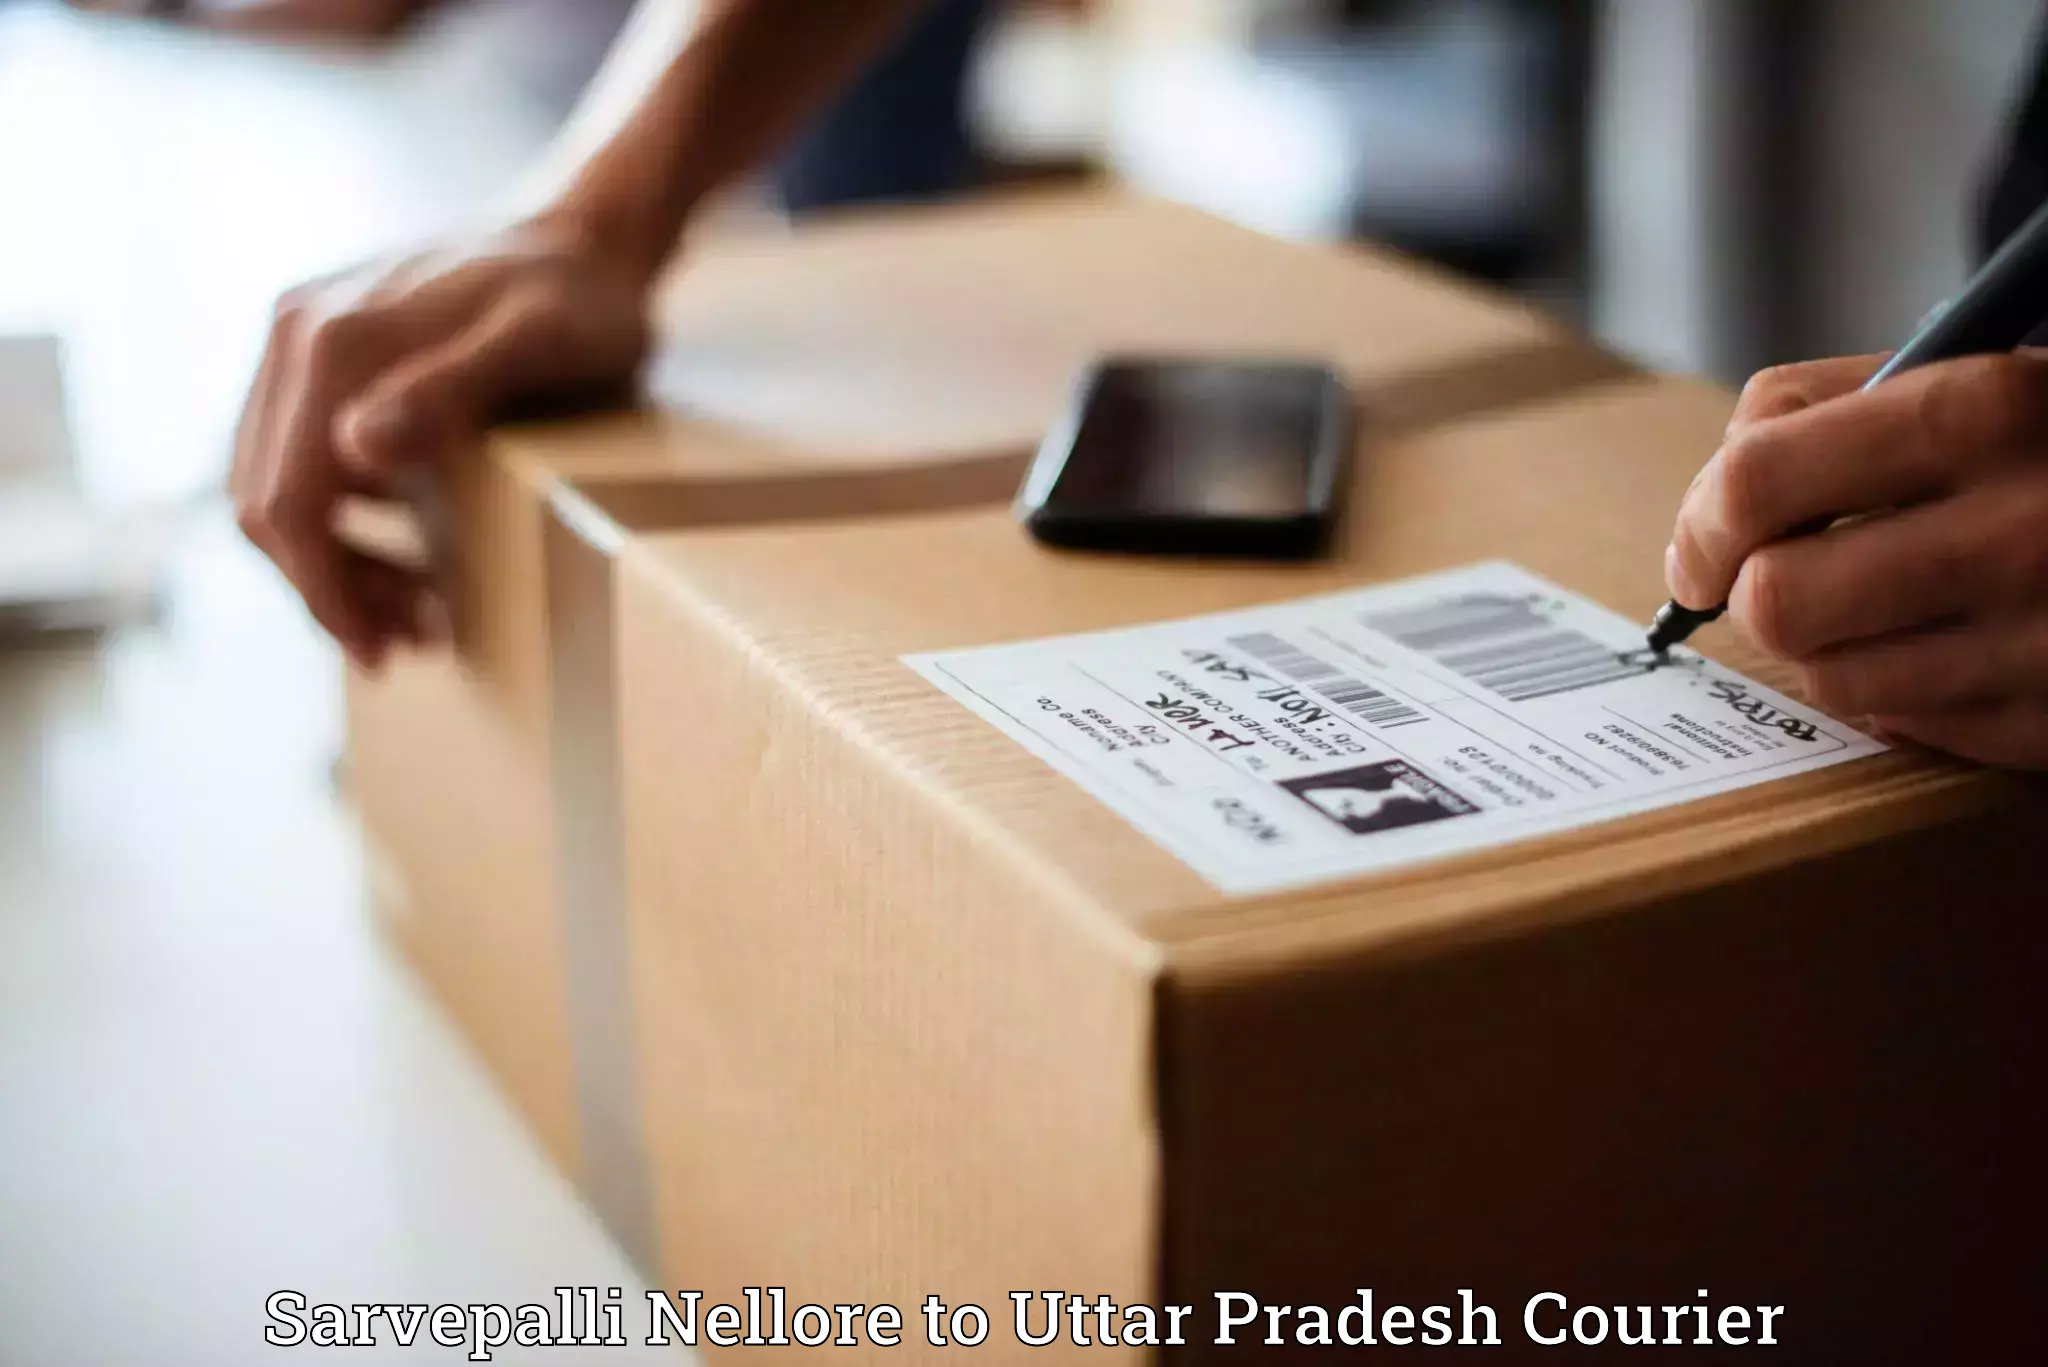 Next-generation courier services Sarvepalli Nellore to Nighasan